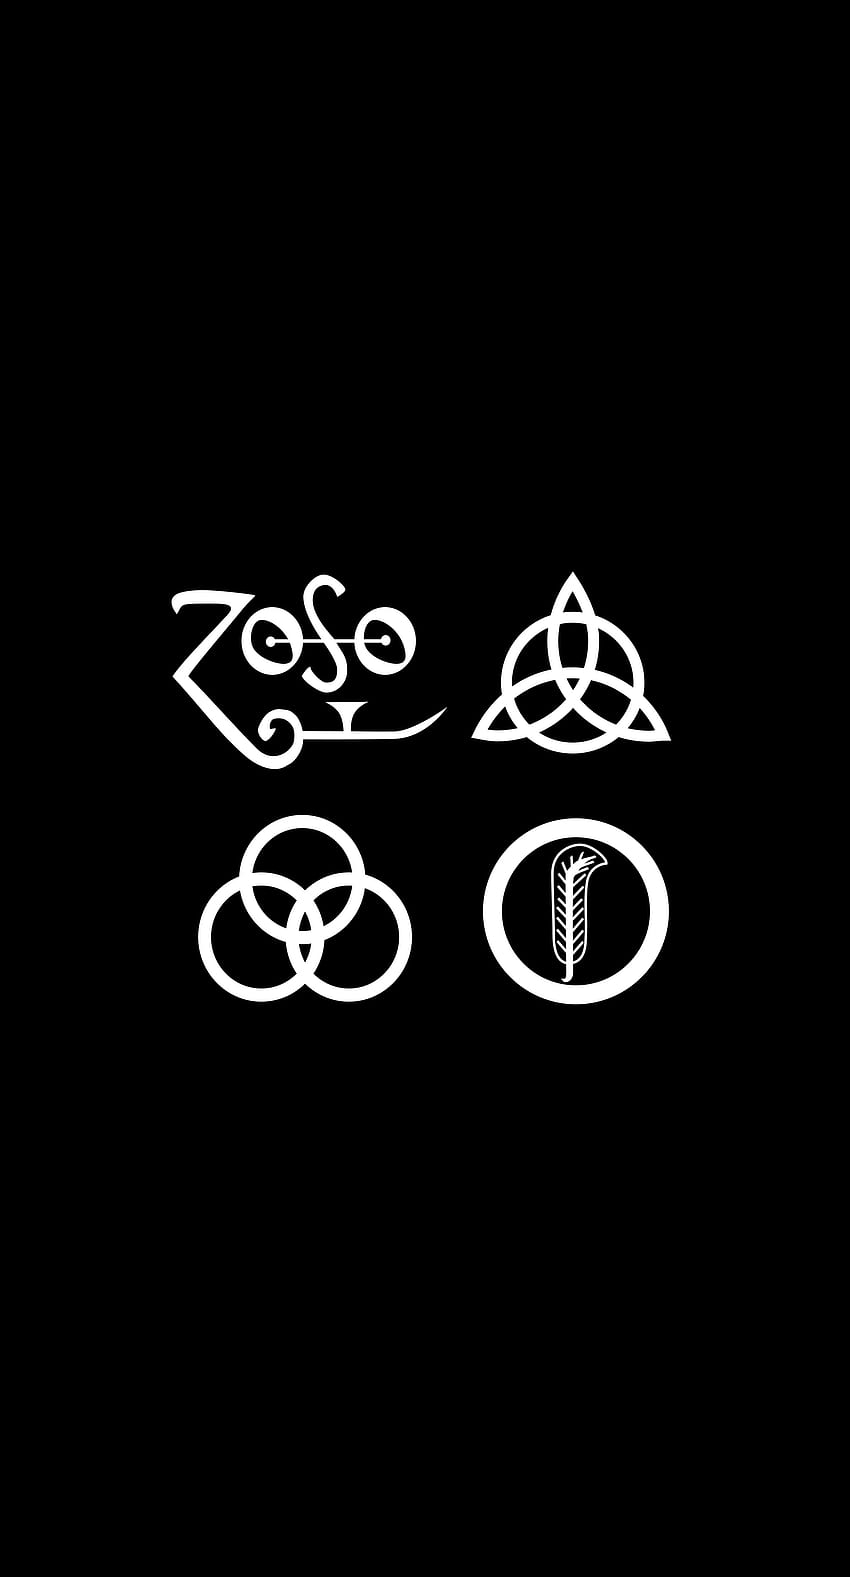 Led Zeppelin Poster - Zeppelin